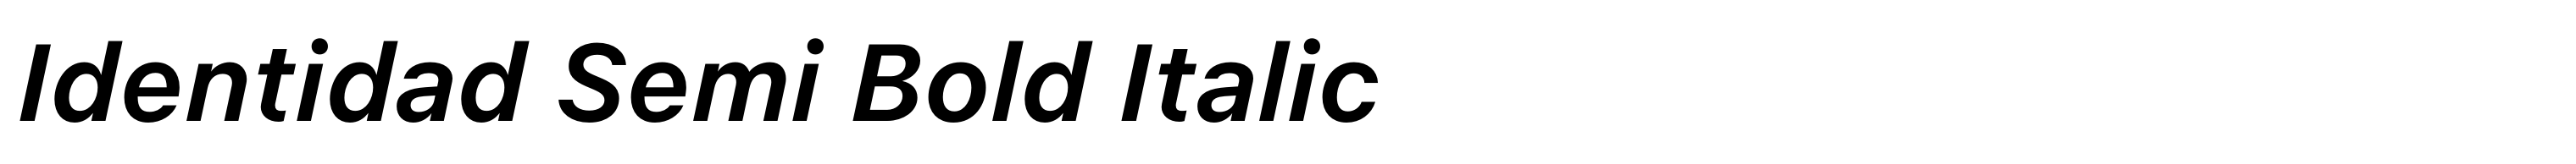 Identidad Semi Bold Italic